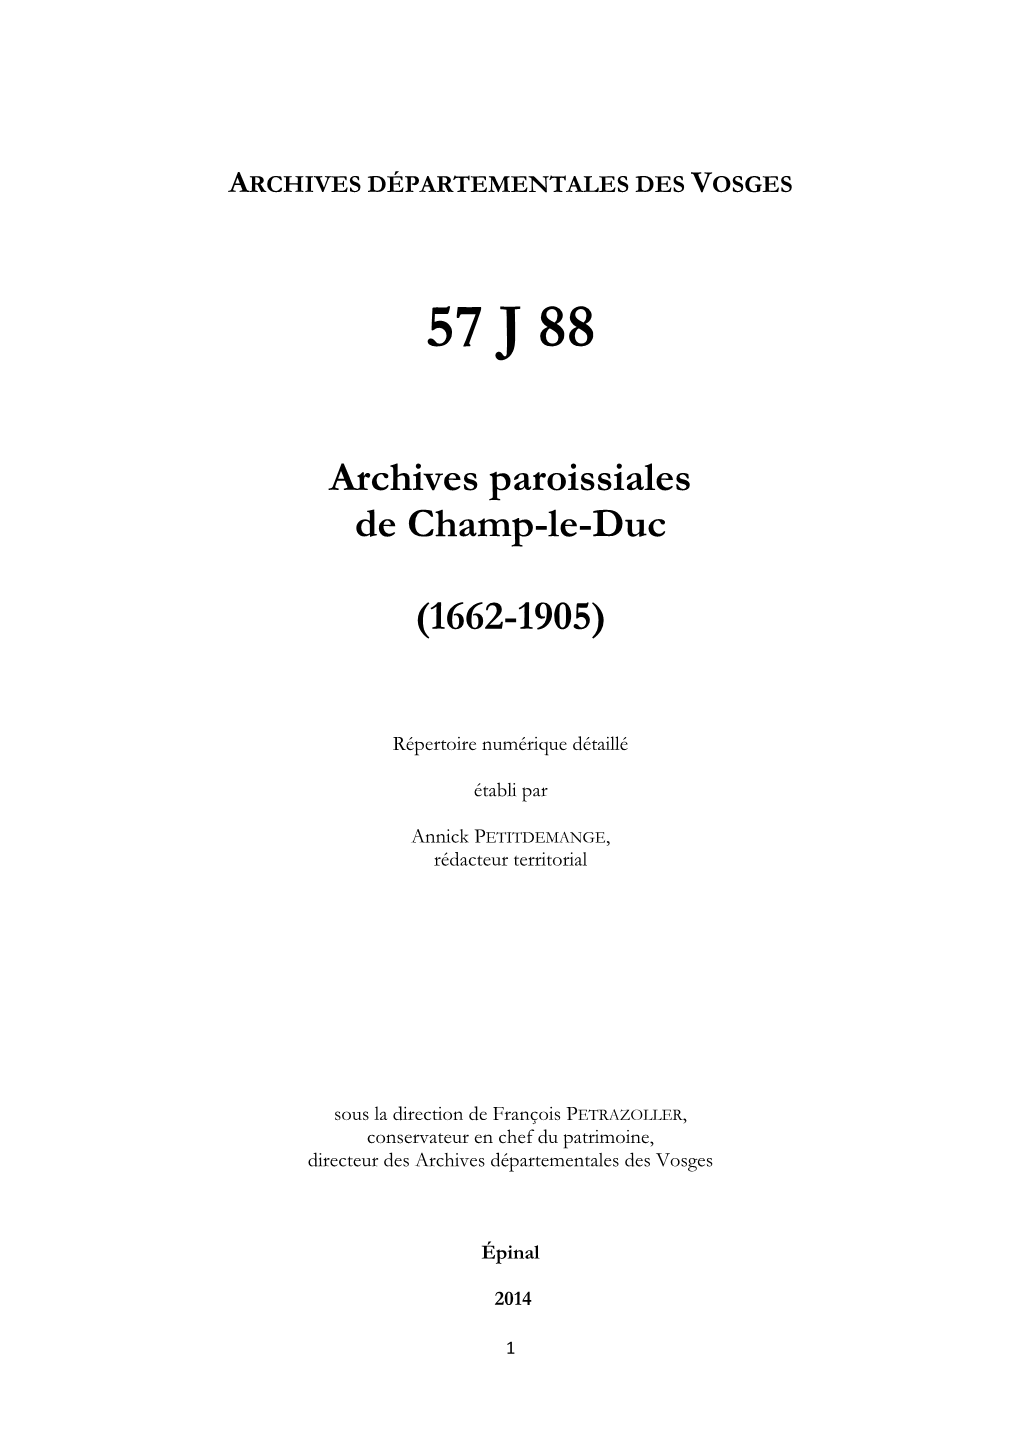 Archives De La Paroisse De Champ-Le-Duc.Pdf